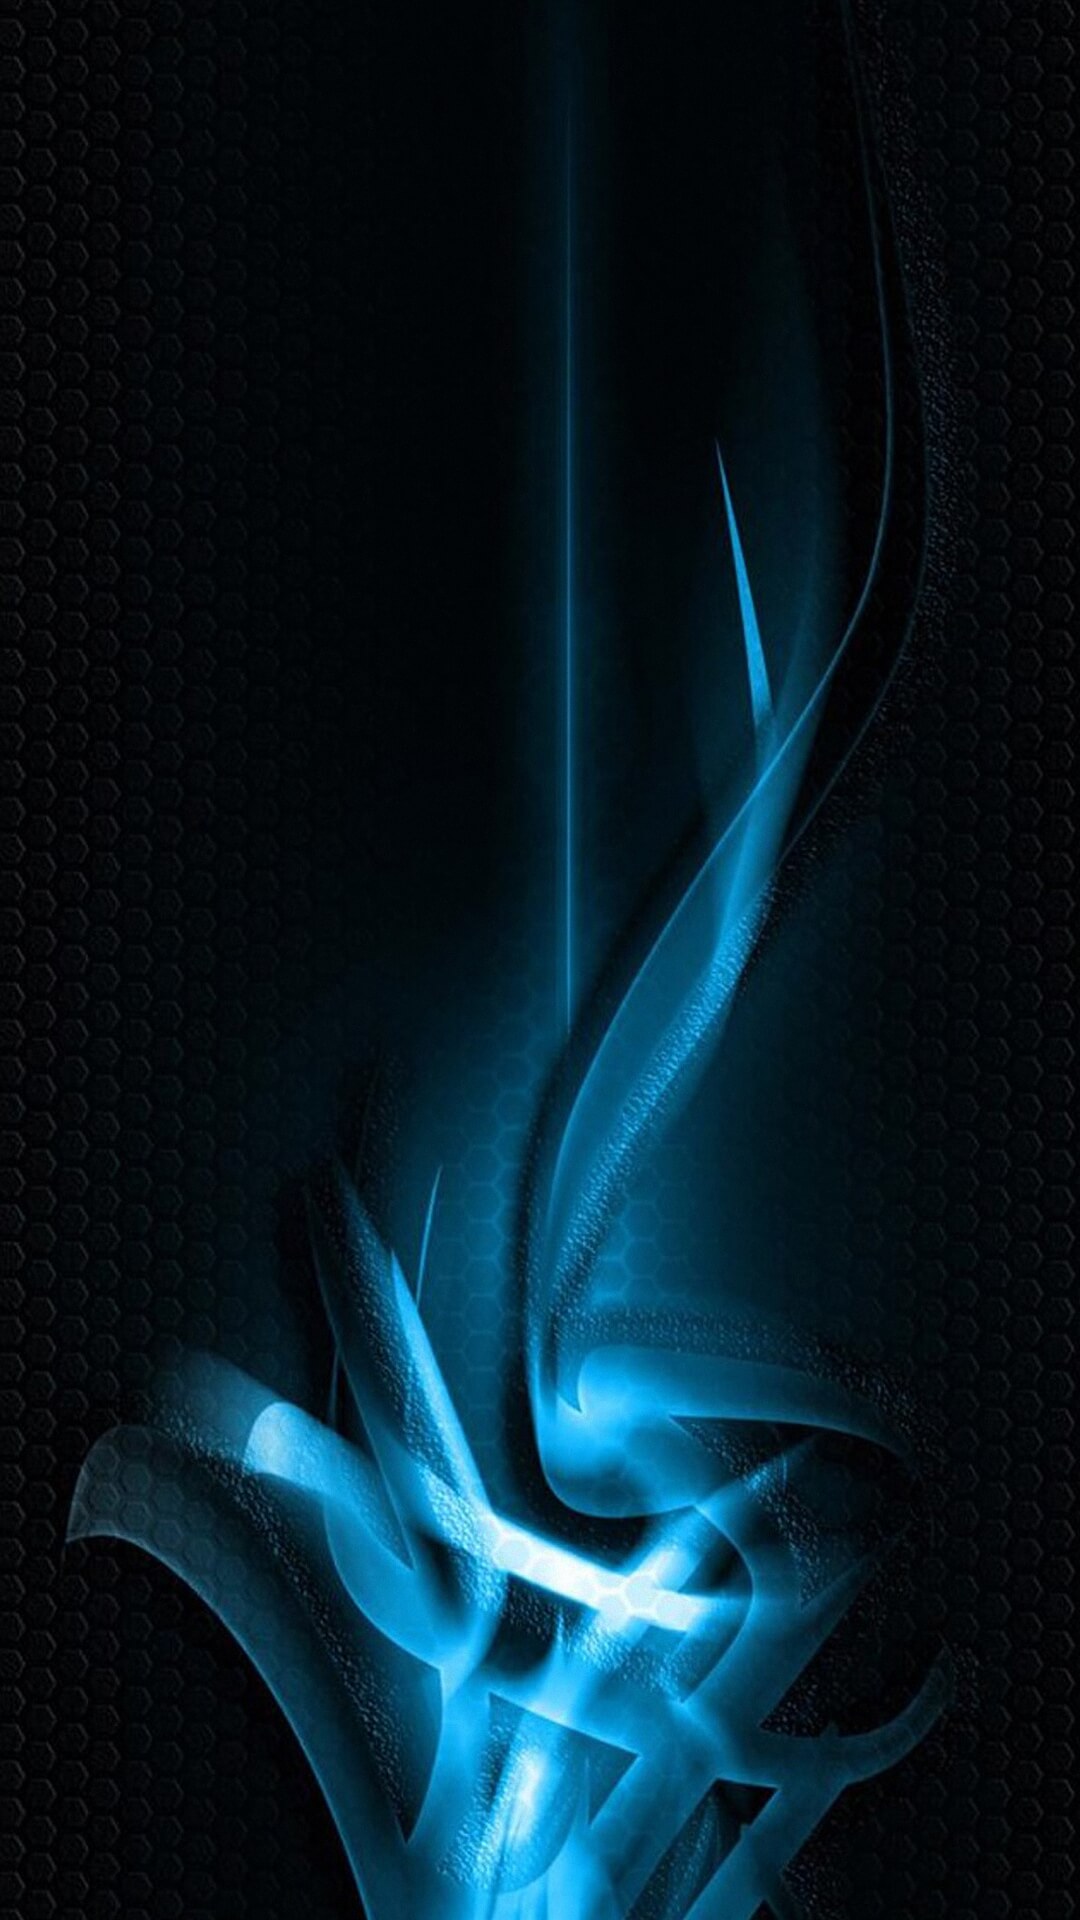 fondos de pantalla hd para iphone 6 1080p,azul,agua,fuego,azul eléctrico,fuego